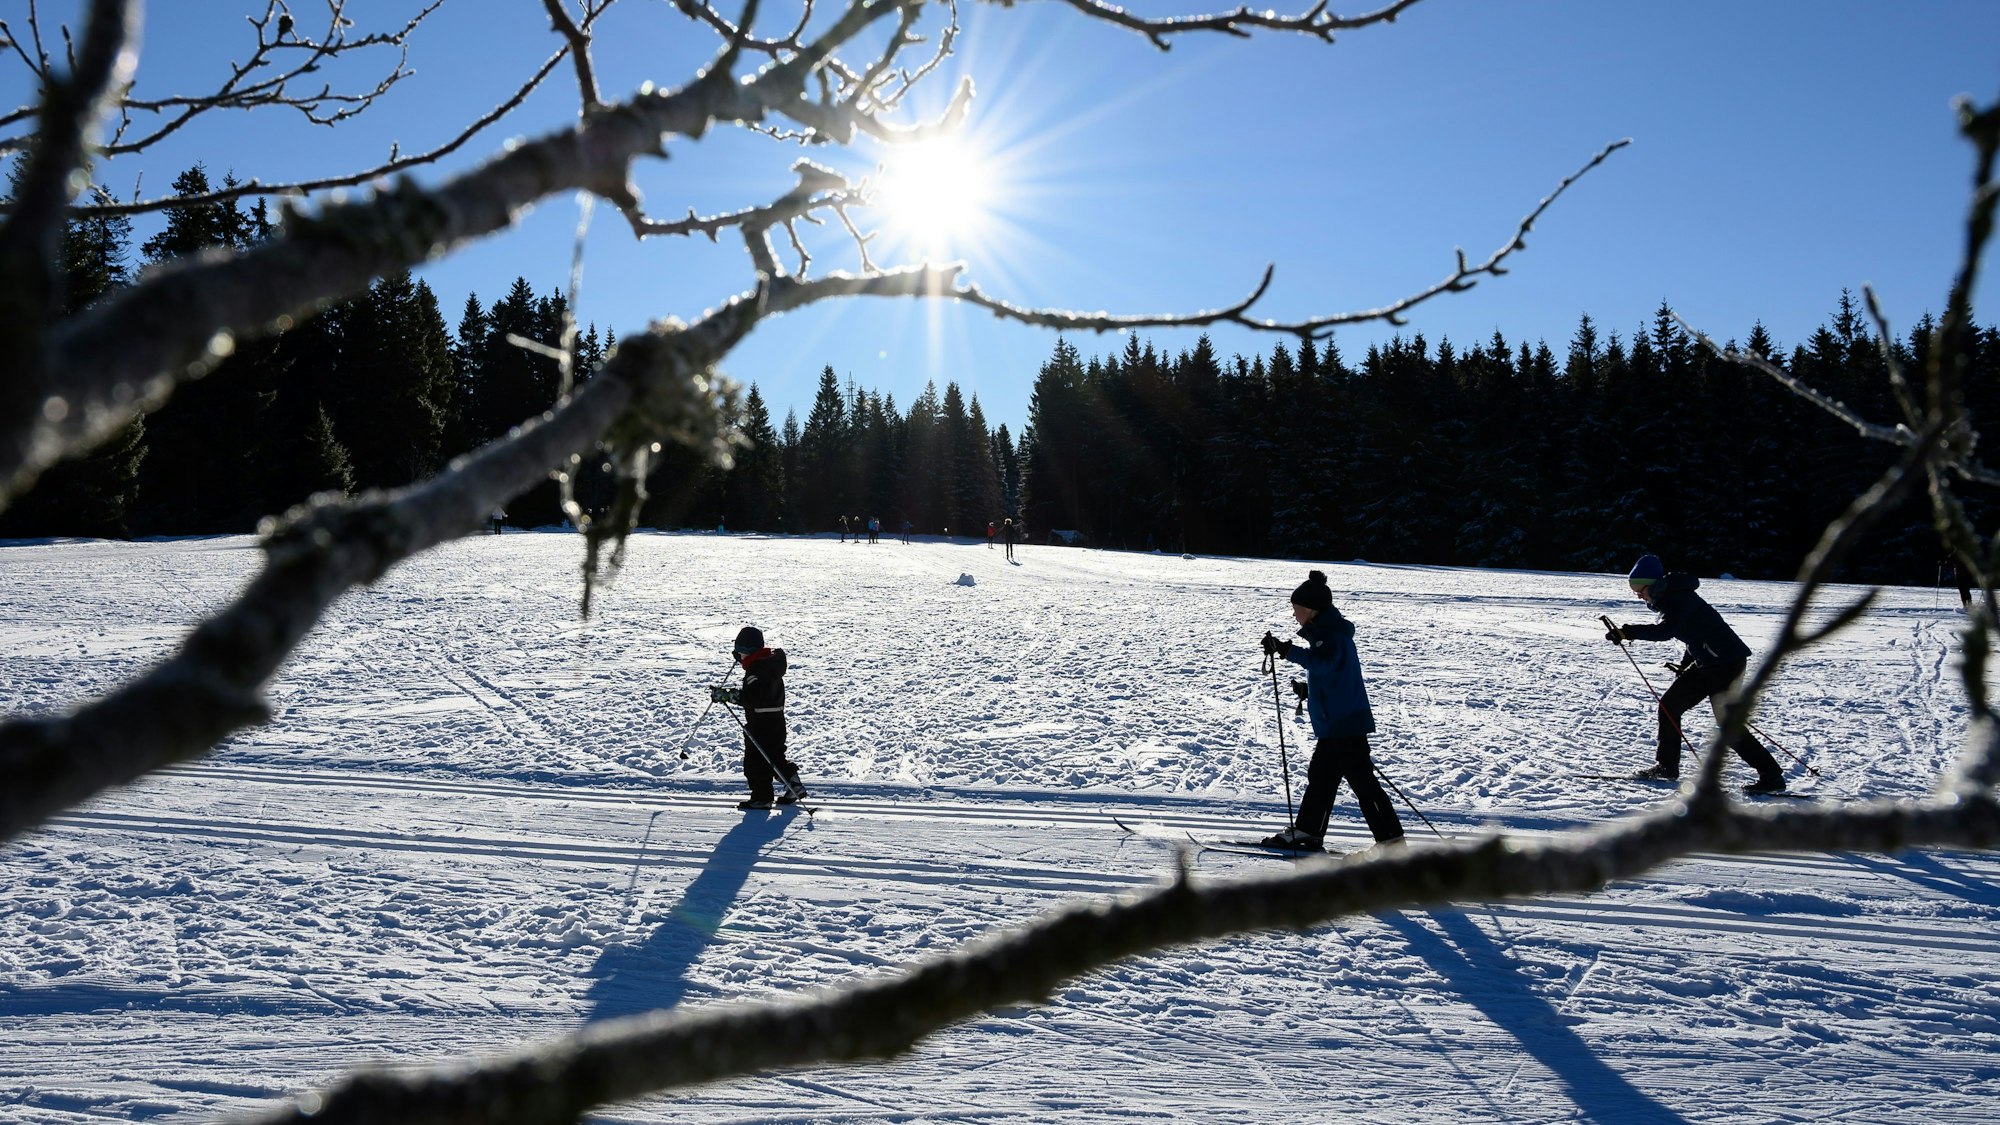 Freizeitsportler sind auf Langlaufskiern in einer verschneiten Landschaft unterwegs (Symbolbild).